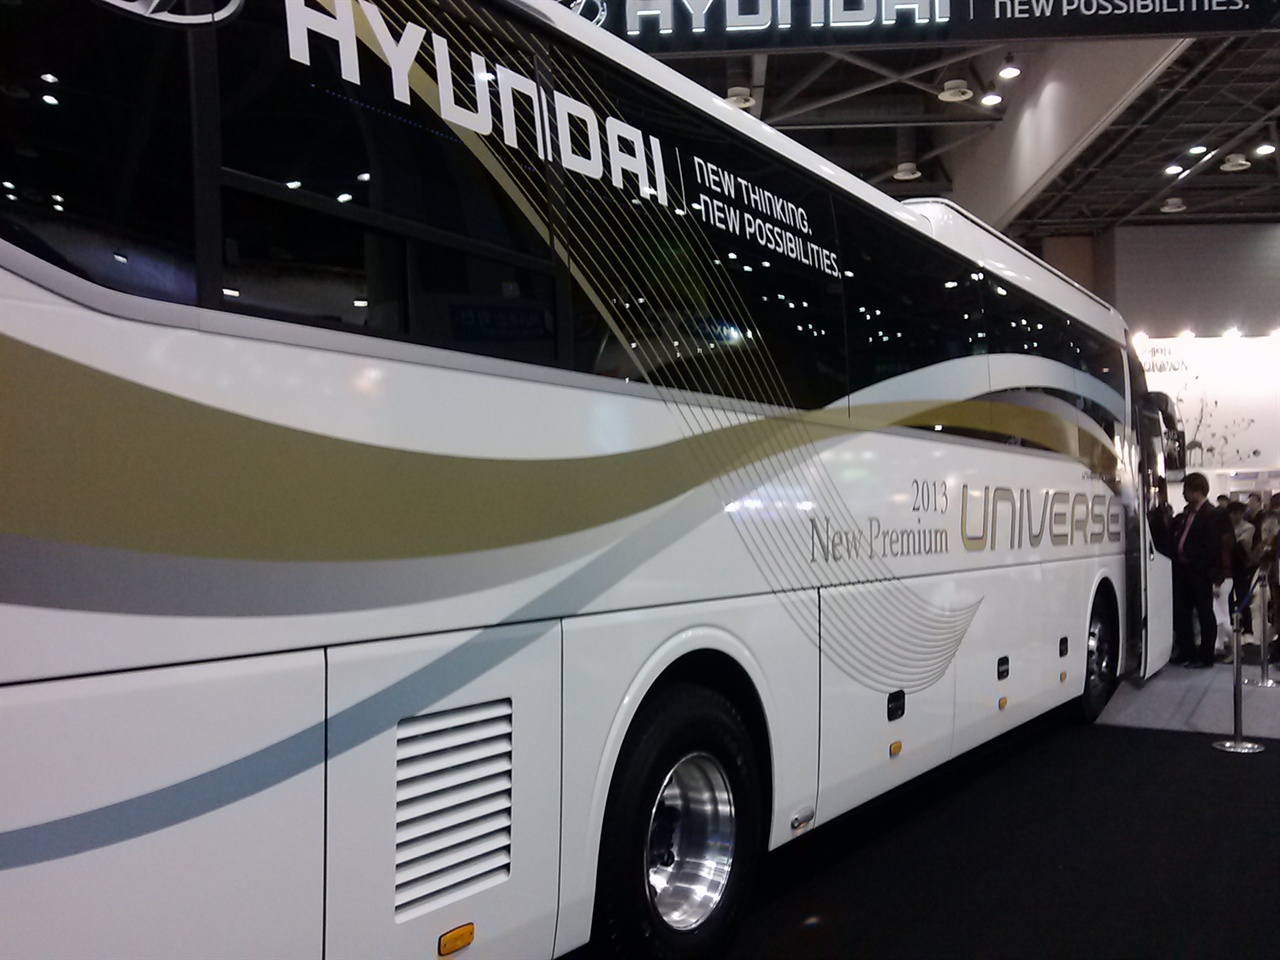 2013년 서울모터쇼에서 처음 공개되었던 프리미엄 버스의 첫 프로토타입 모델.